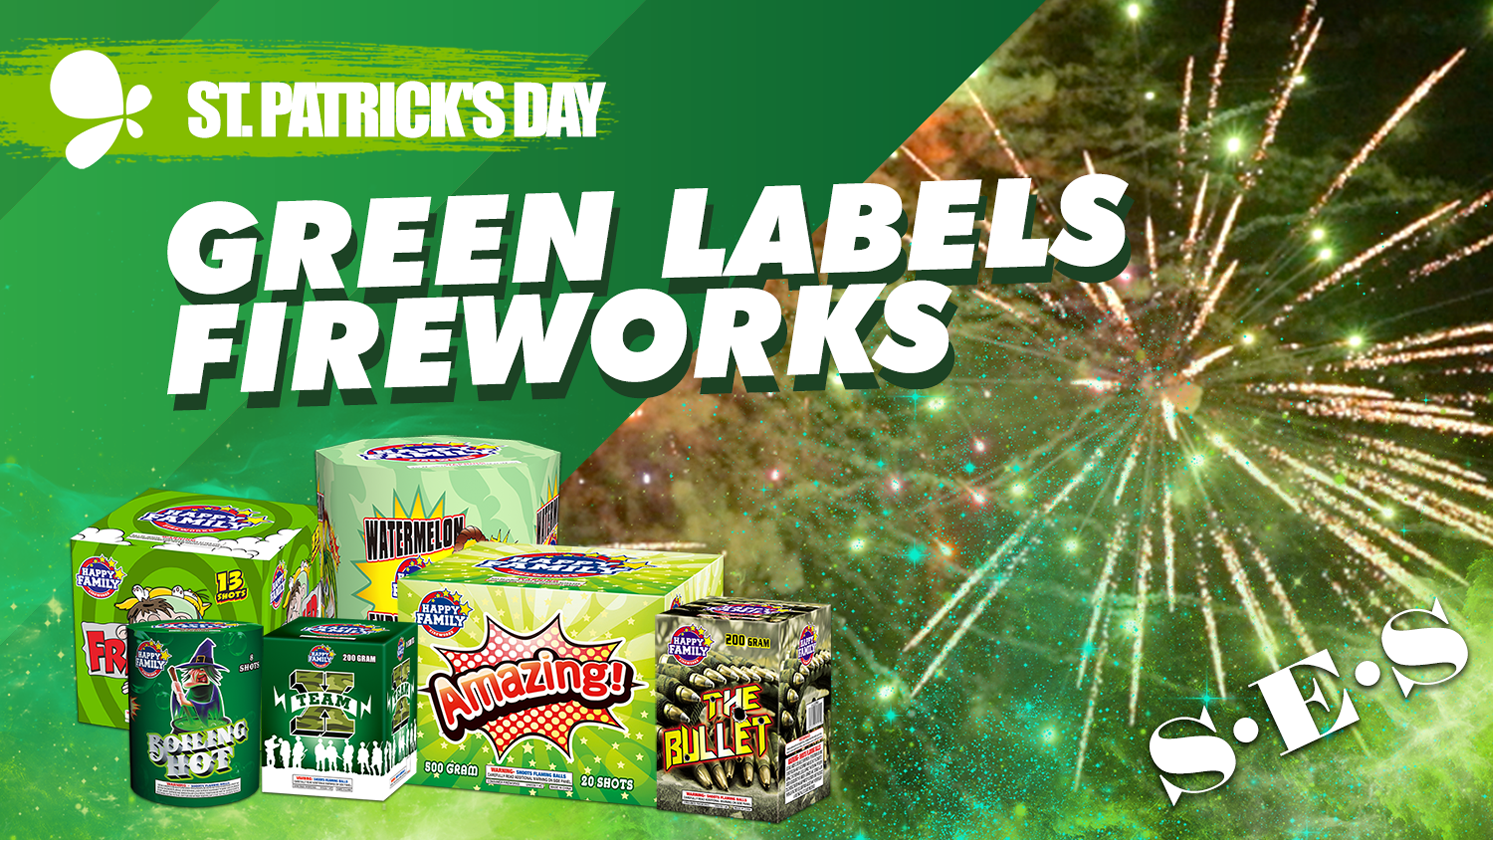 Green labels fireworks for St.Patrick' Day, 5 items light together ,enjoy #fireworks